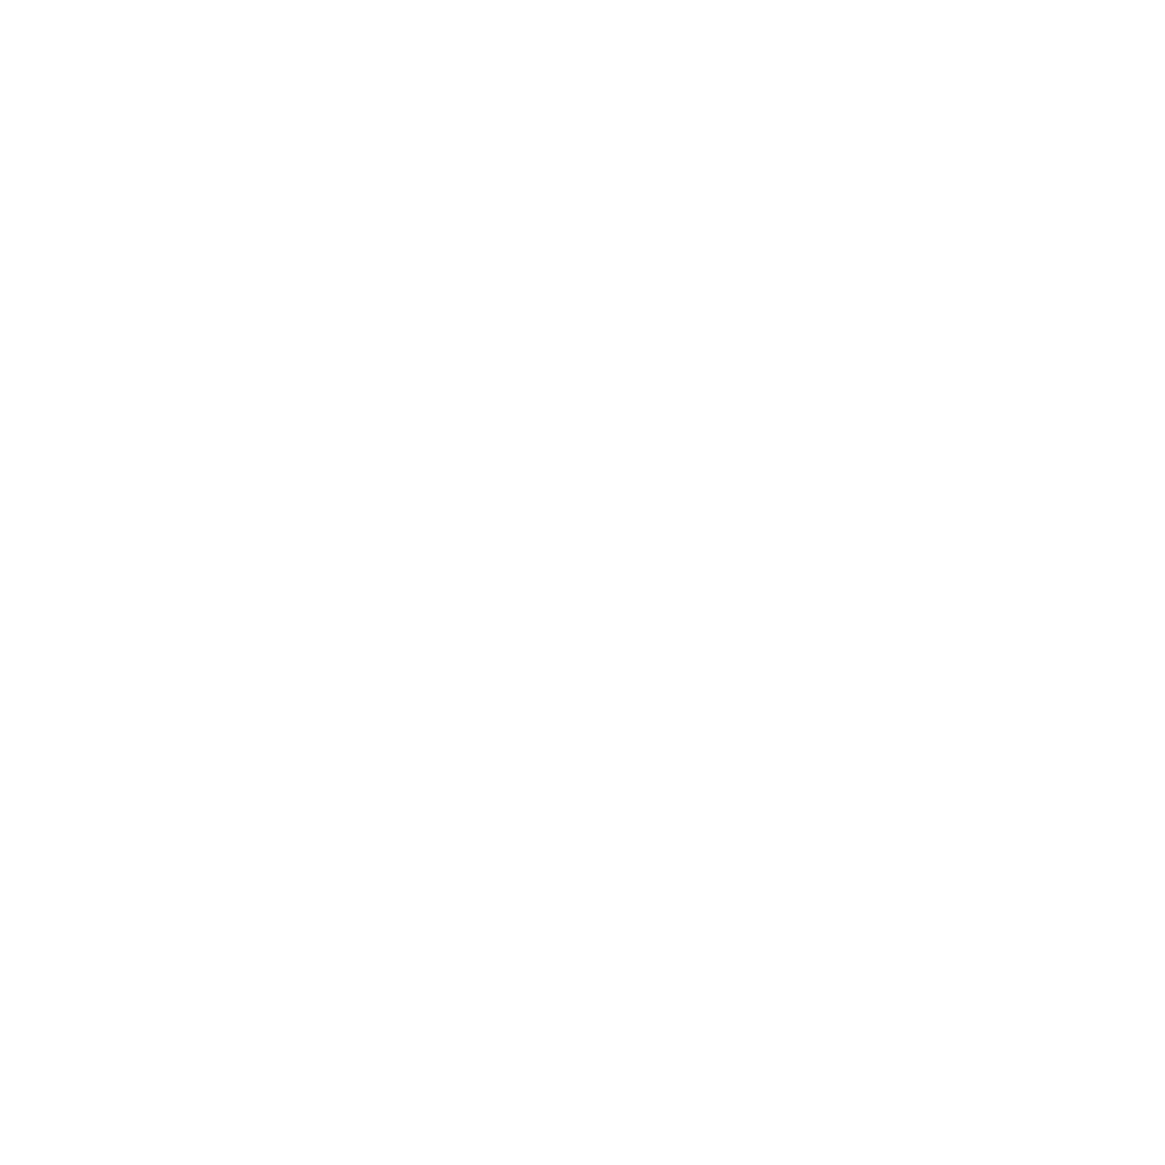 Hartland Hollow Modern Homestead